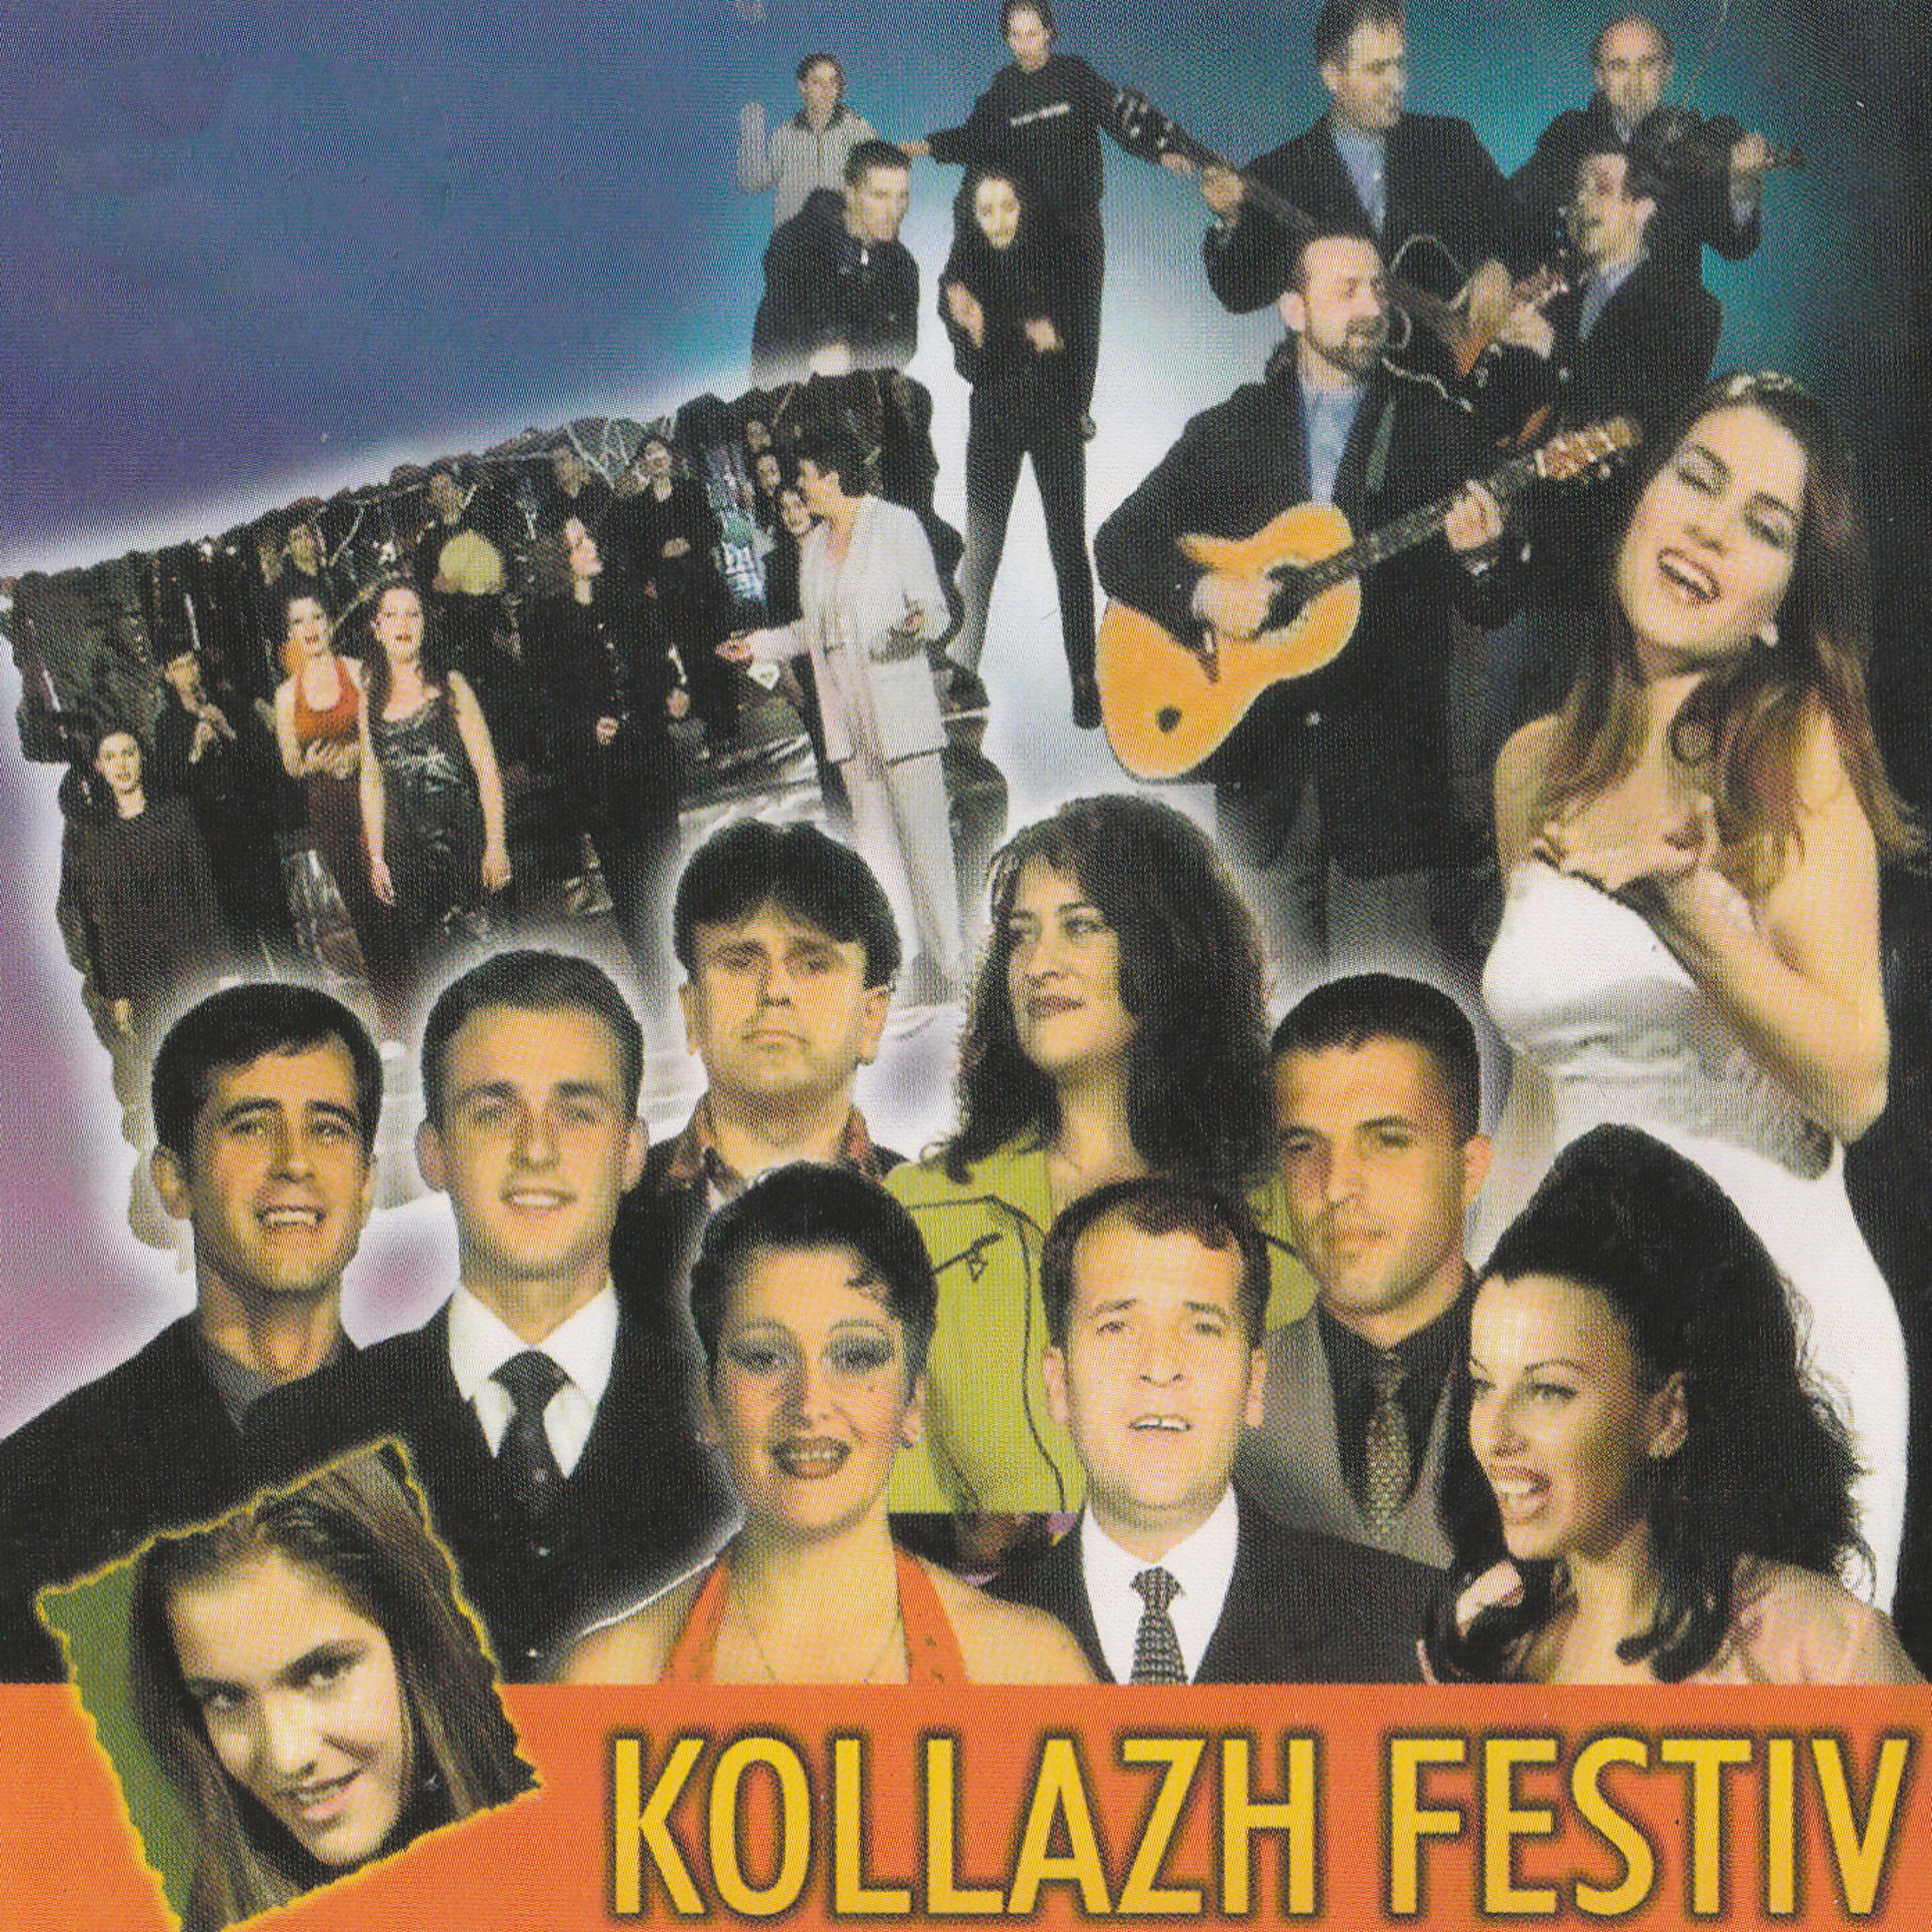 Kollazh Festiv